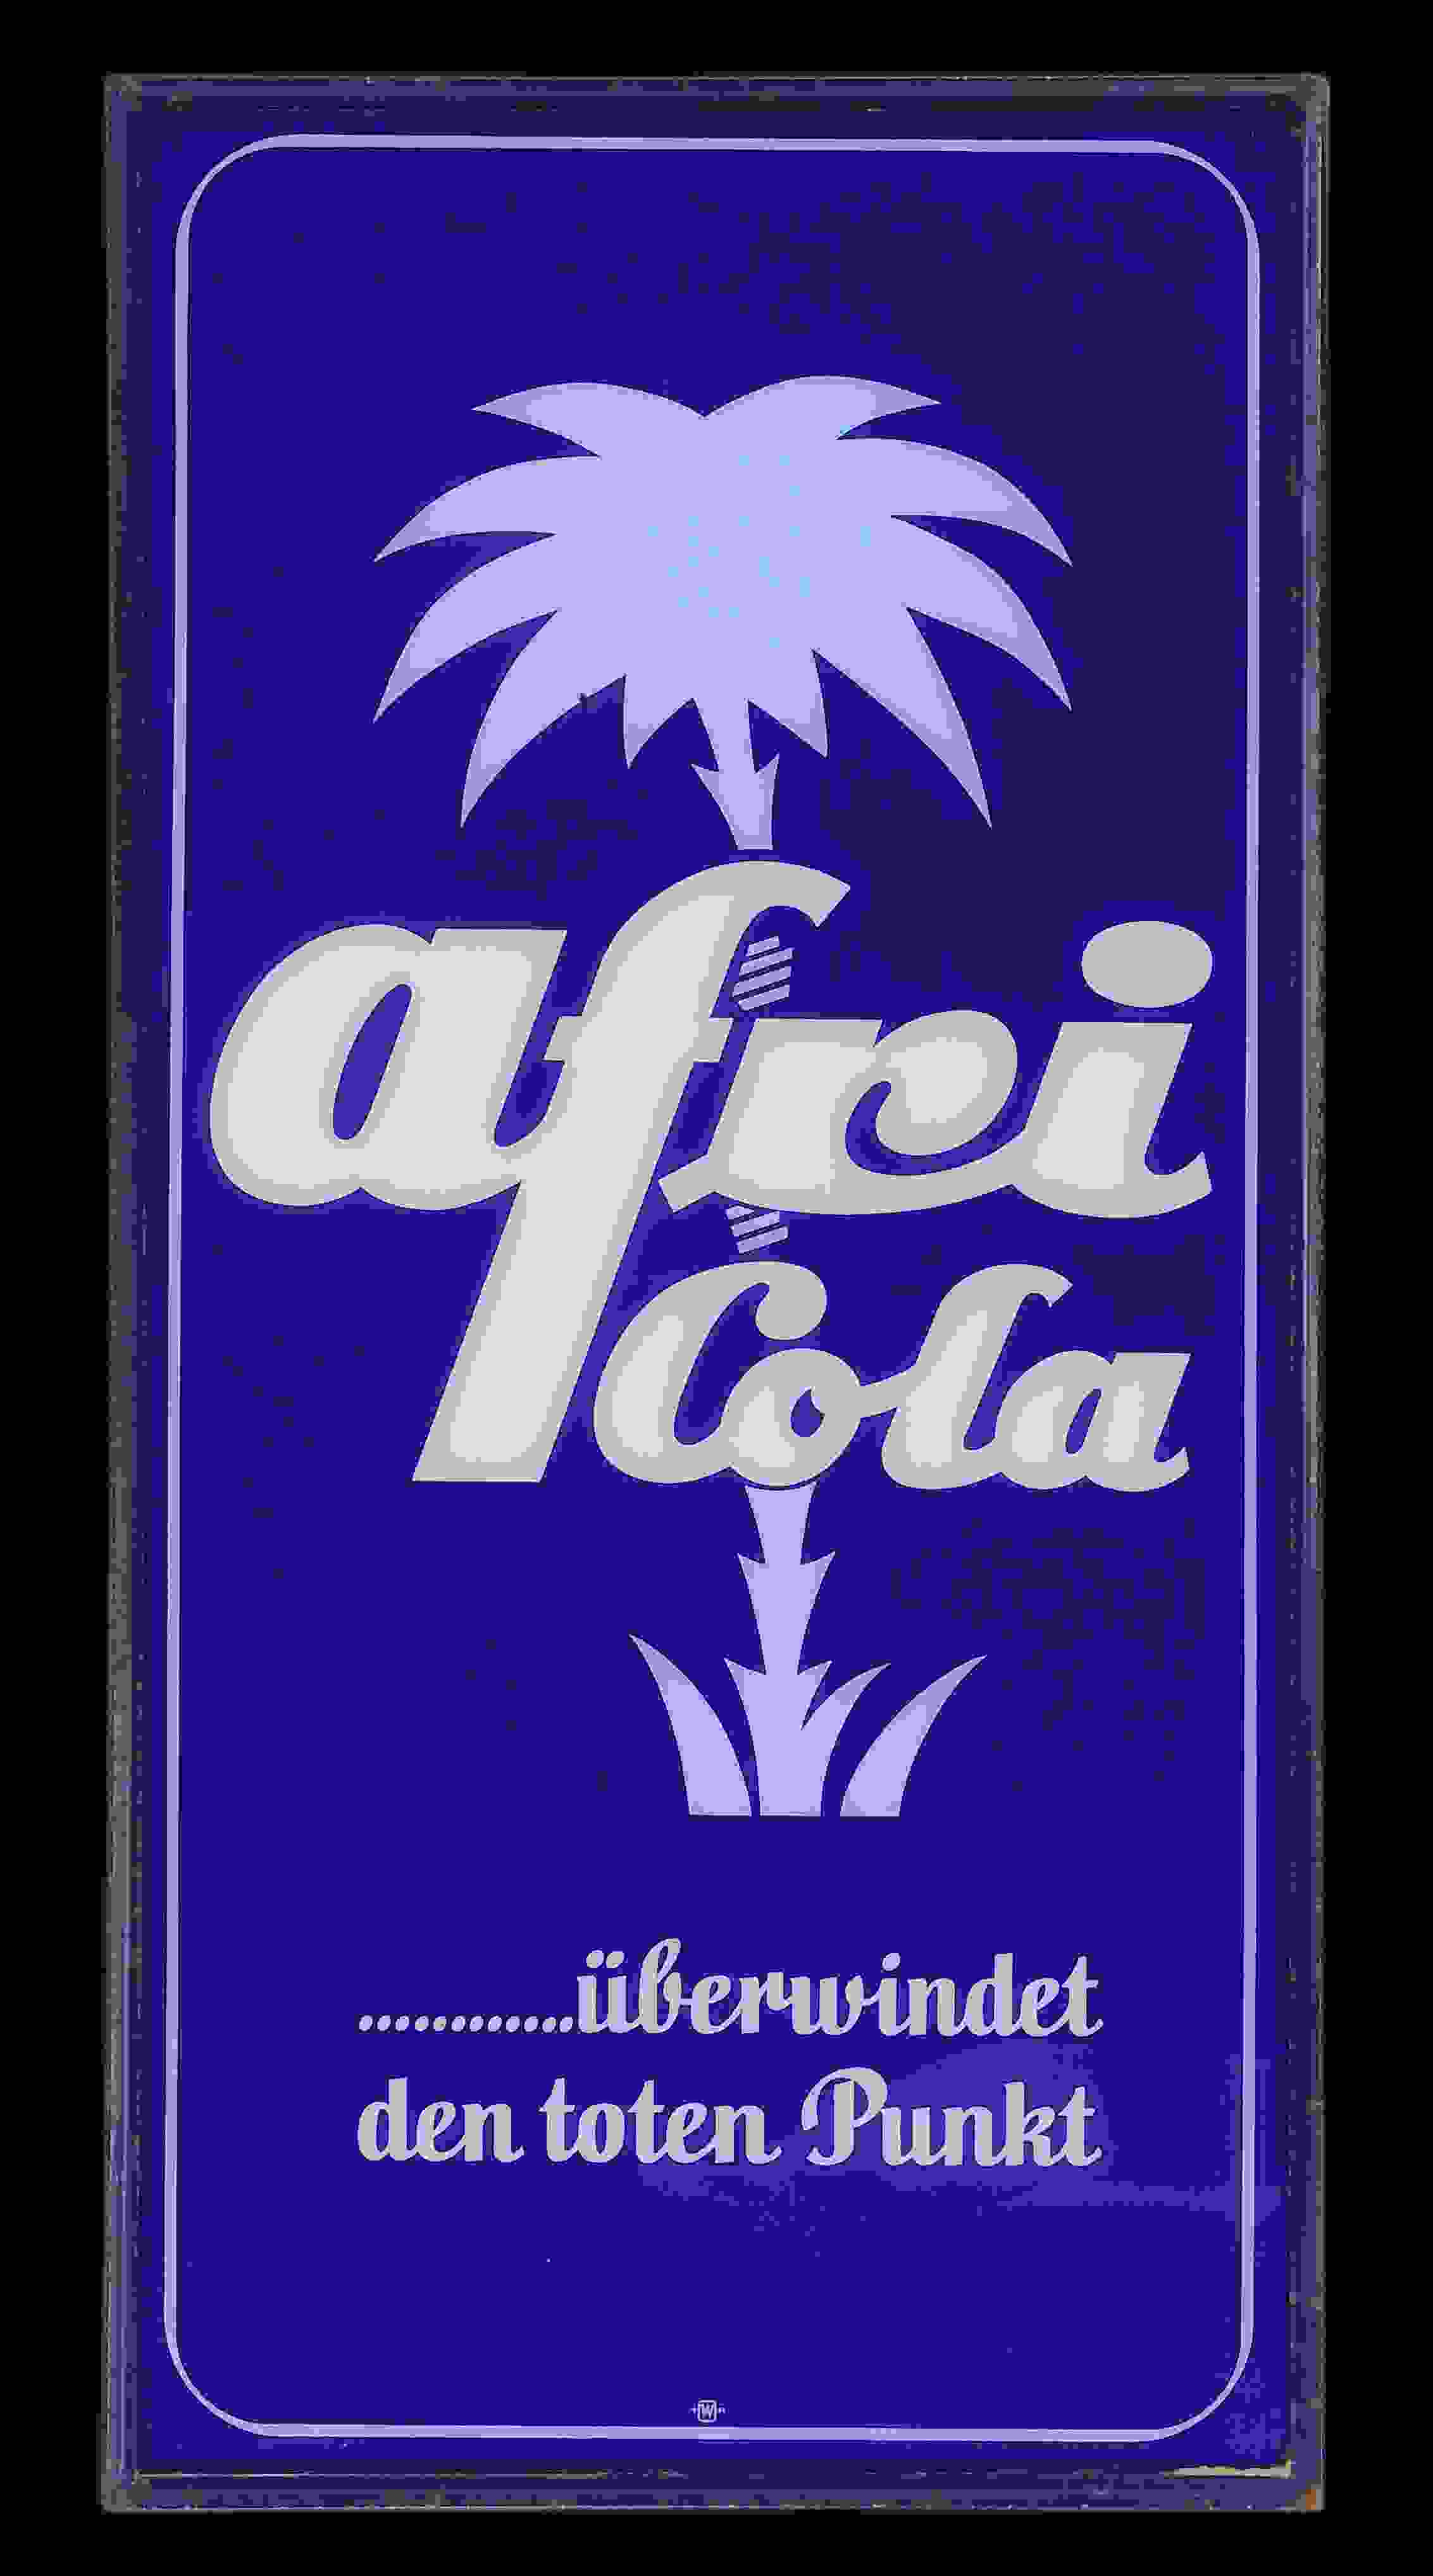 Afri Cola …überwindet den toten Punkt 